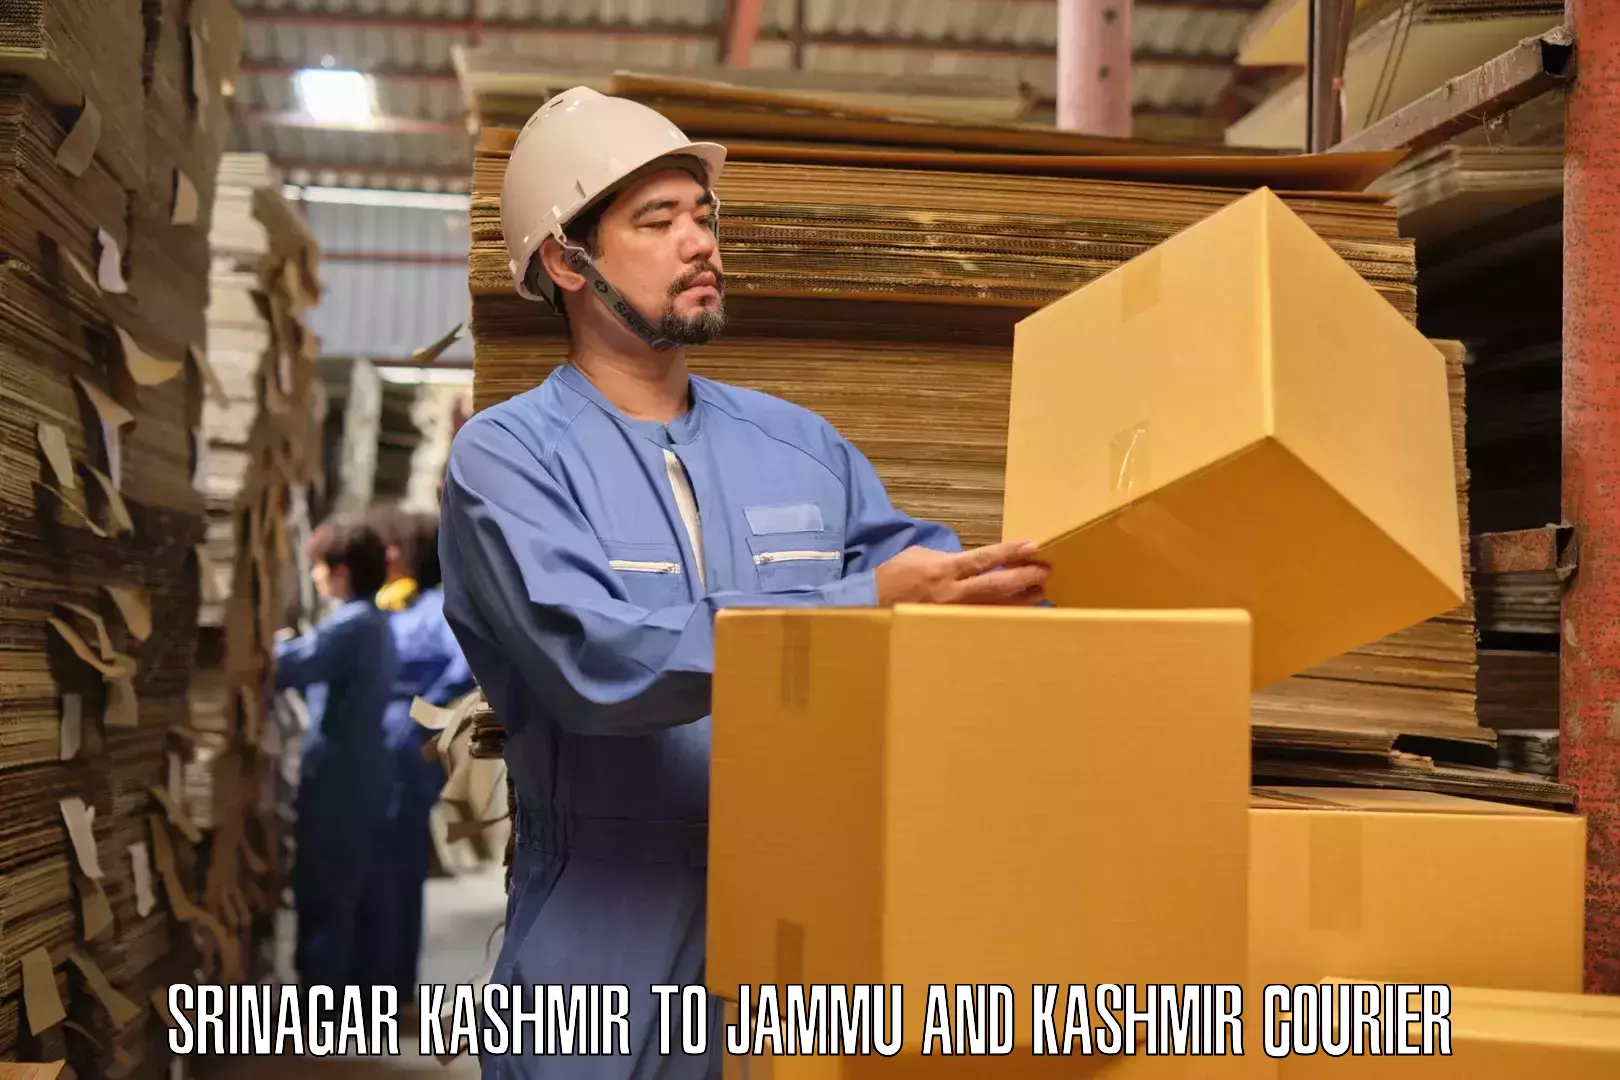 Furniture transport specialists Srinagar Kashmir to Samba